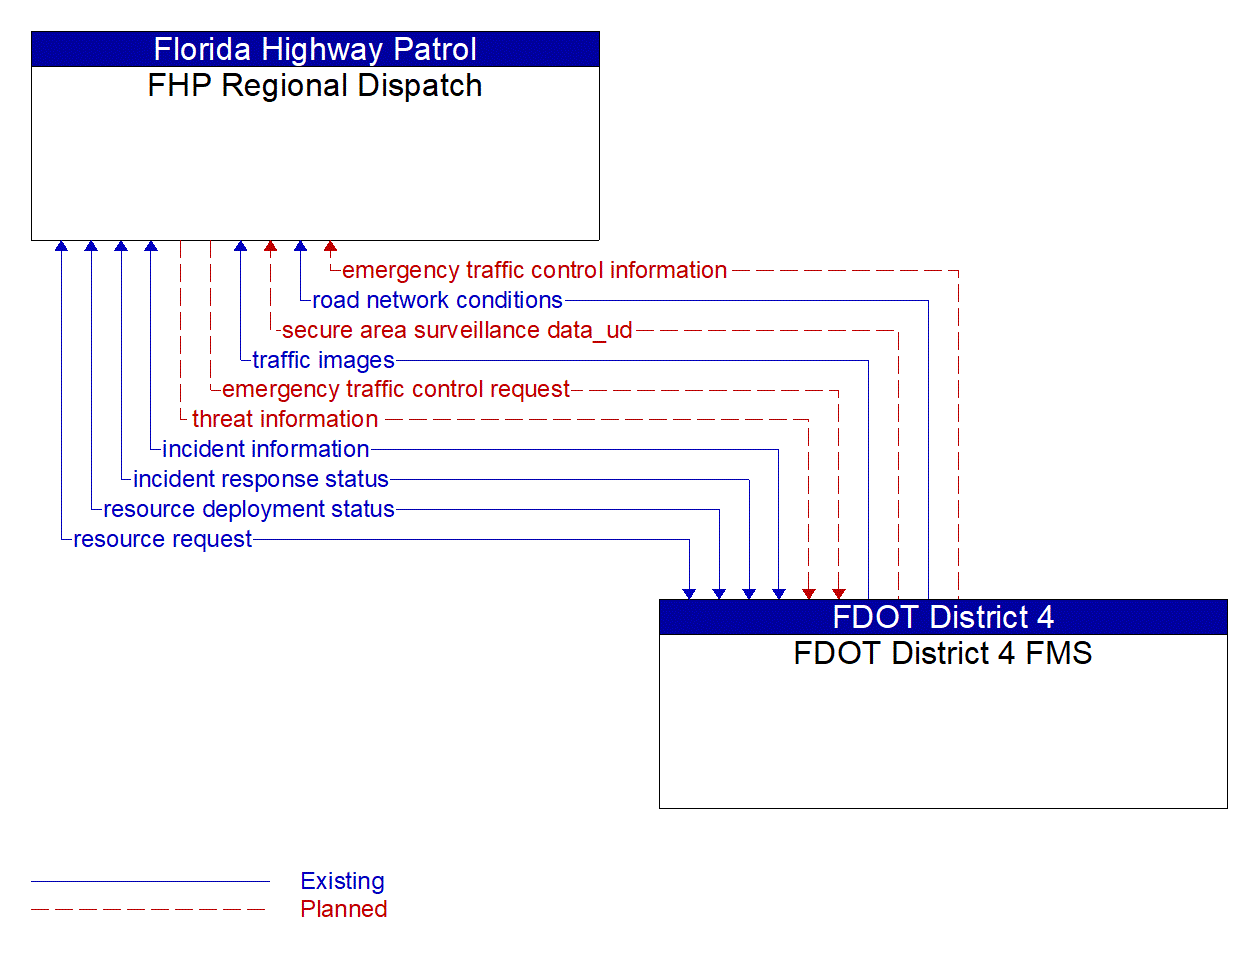 Architecture Flow Diagram: FDOT District 4 FMS <--> FHP Regional Dispatch